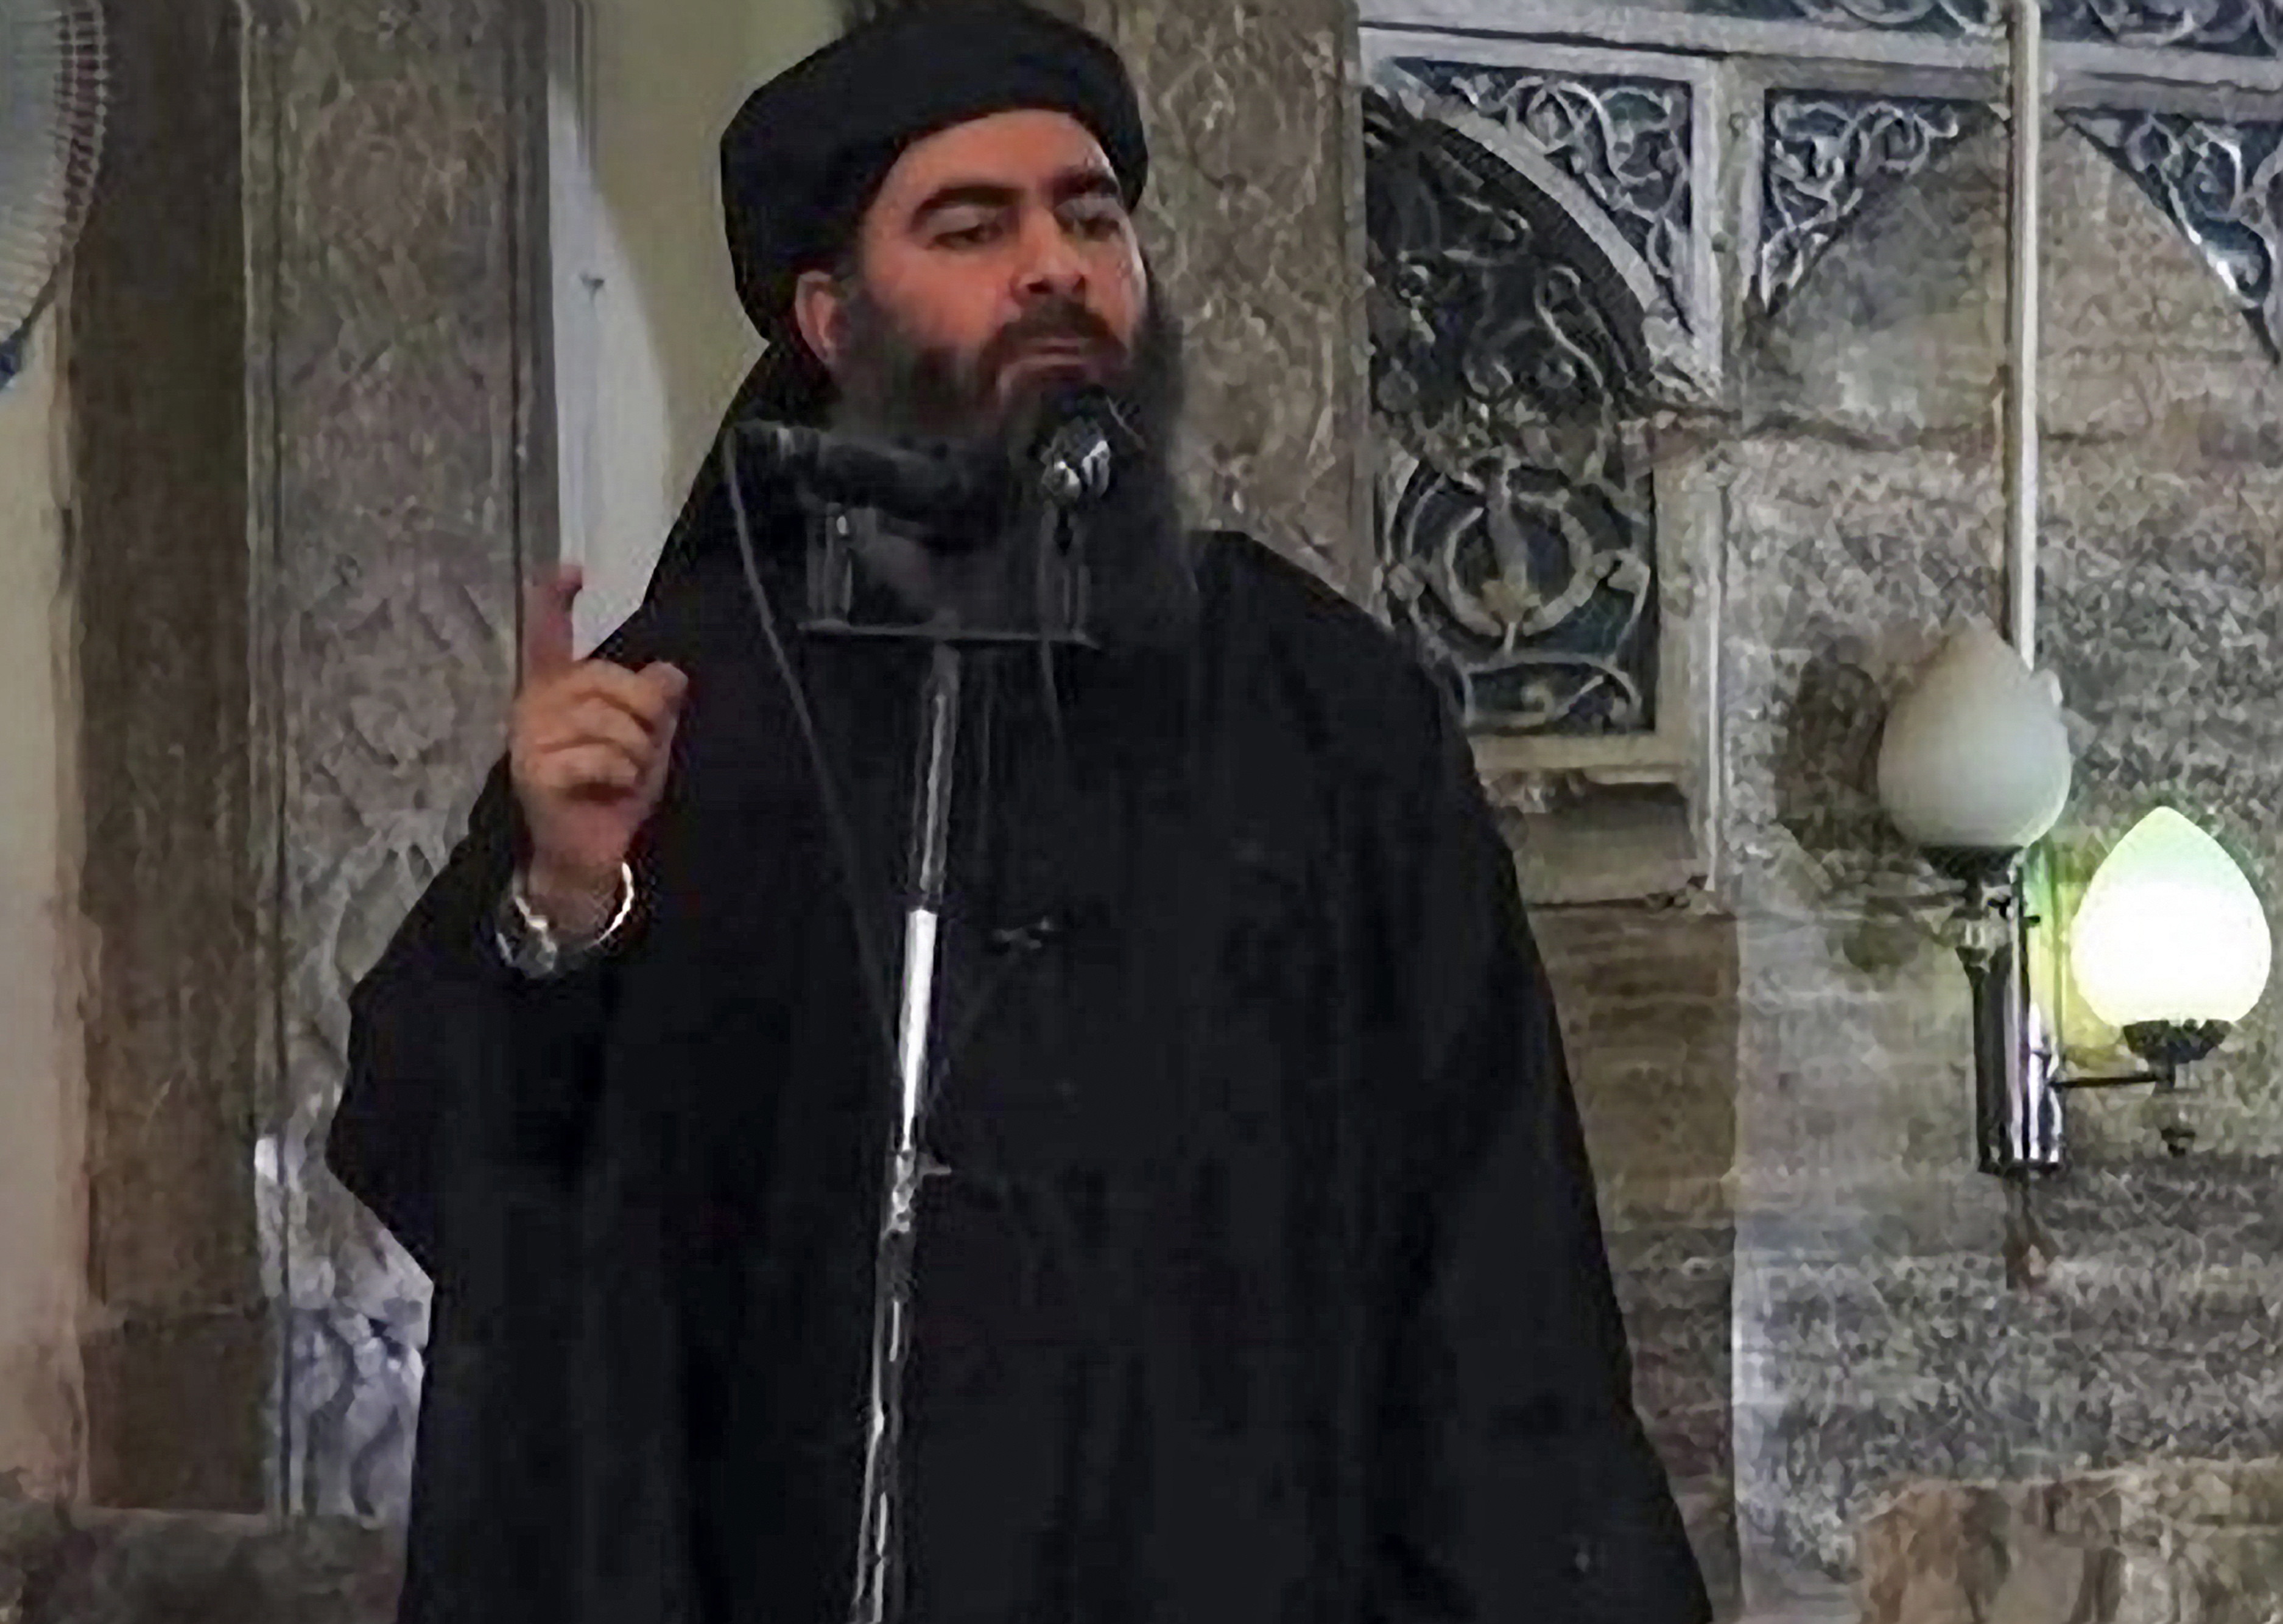 Sora fostului lider ISIS Abu Bakr al-Baghdadi, capturată de turci în nordul Siriei